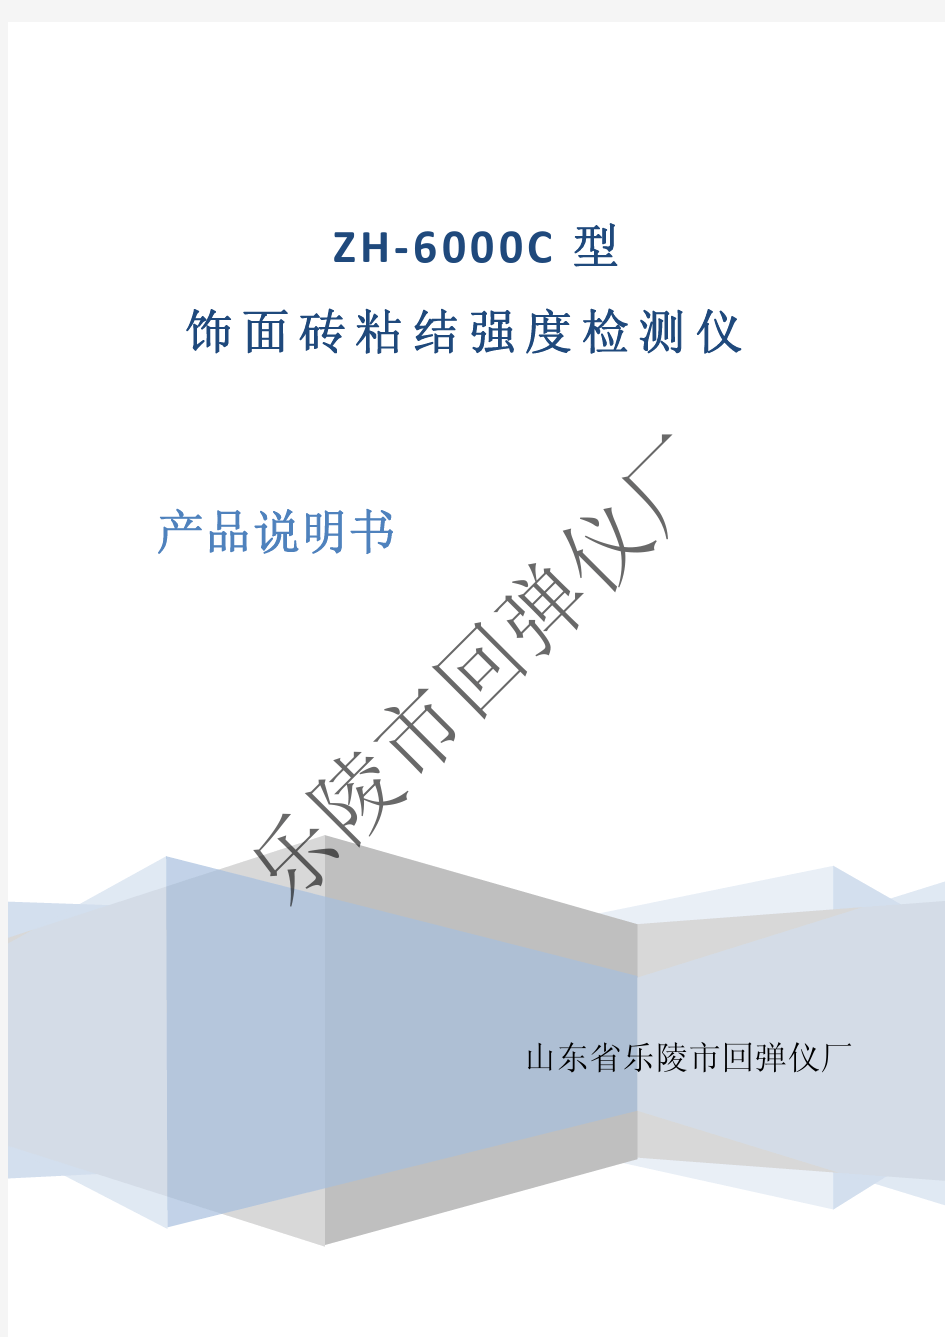 ZH 6000C型 饰面砖粘结强度检测仪 产品说明书